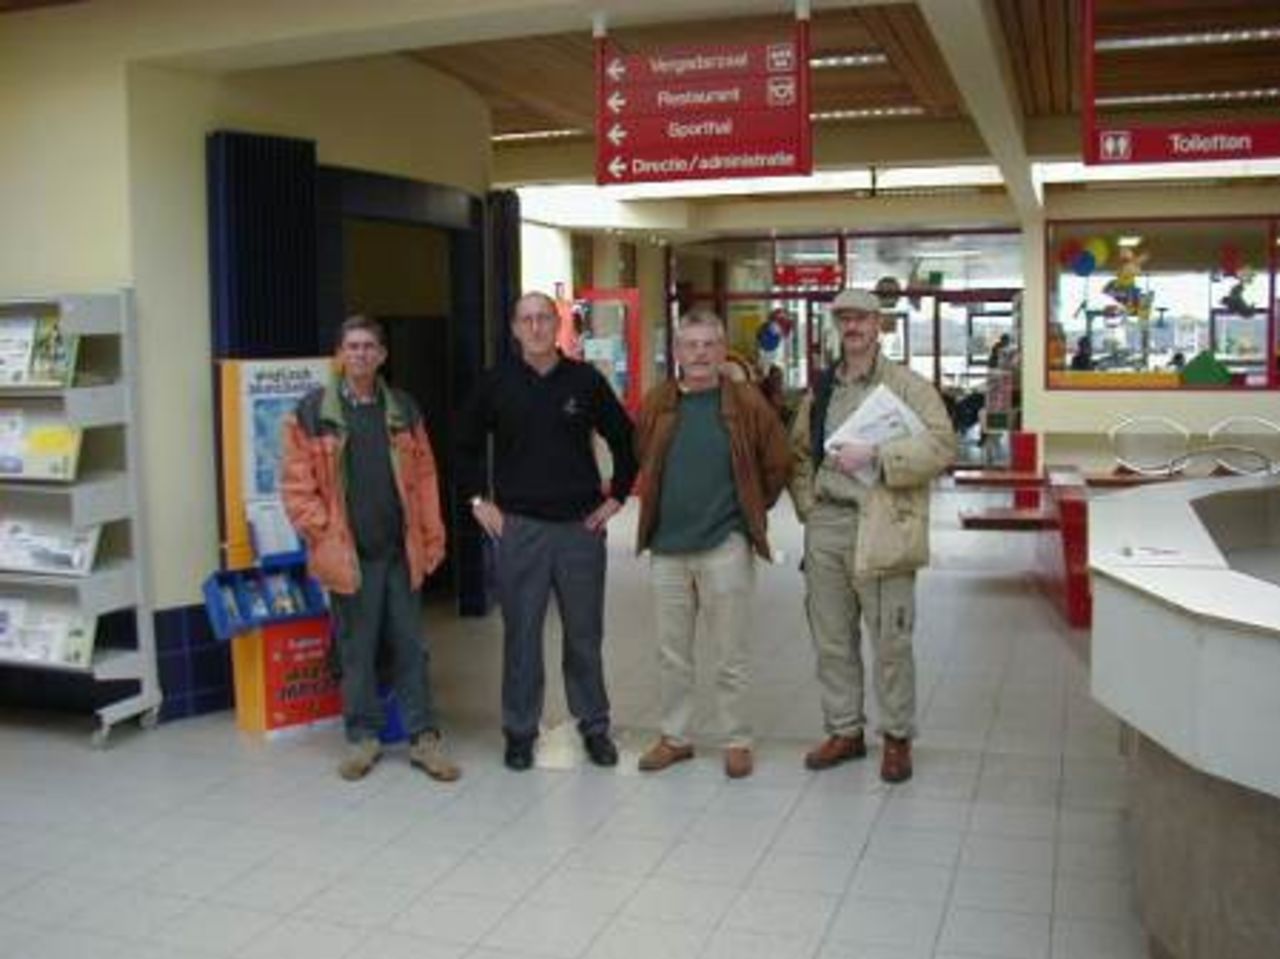 EDM Flying Visit to Belgium, left-right: Martin O'Connor, Ian Stuart, Ken Farmiloe, Paul Larivière